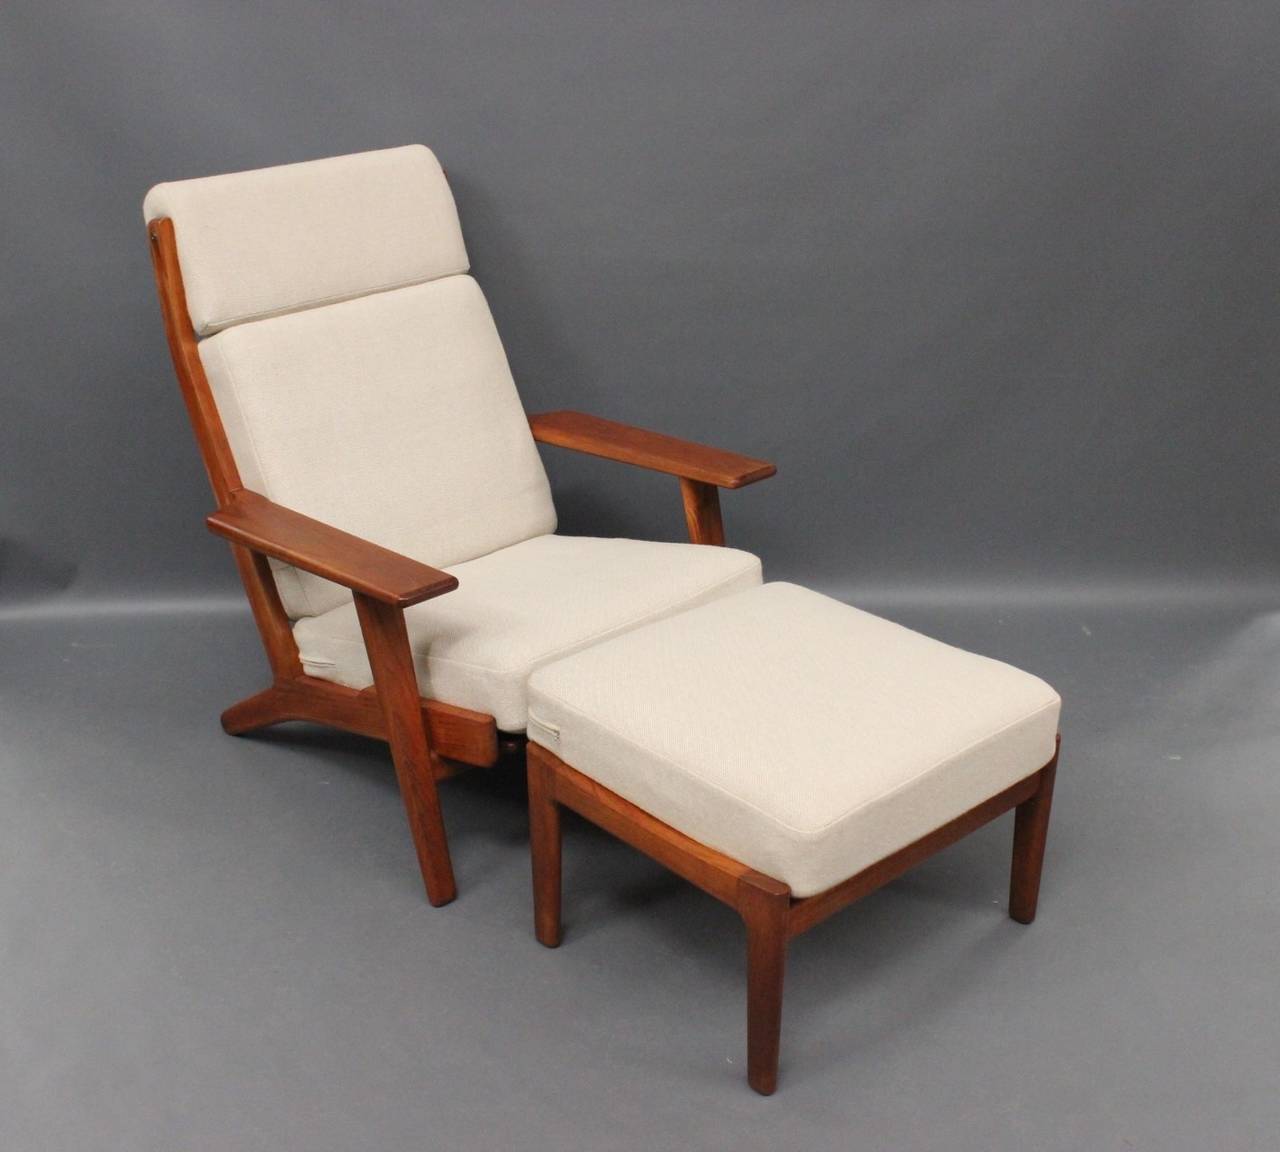 Hans J Wegner Lounge Chair With Footstool Model Ge290 In Teak